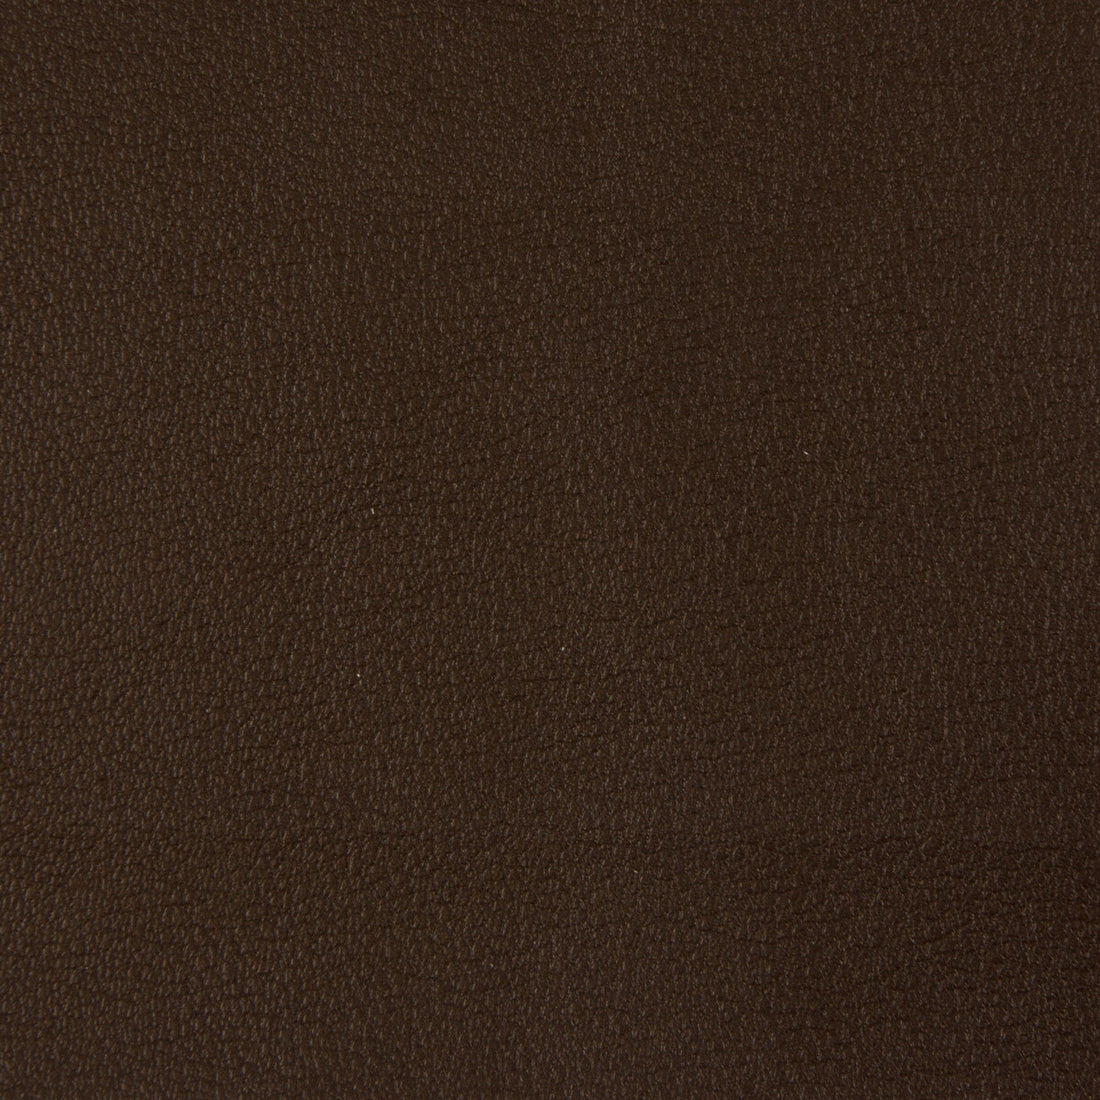 Kravet Smart fabric in newt-66 color - pattern NEWT.66.0 - by Kravet Smart